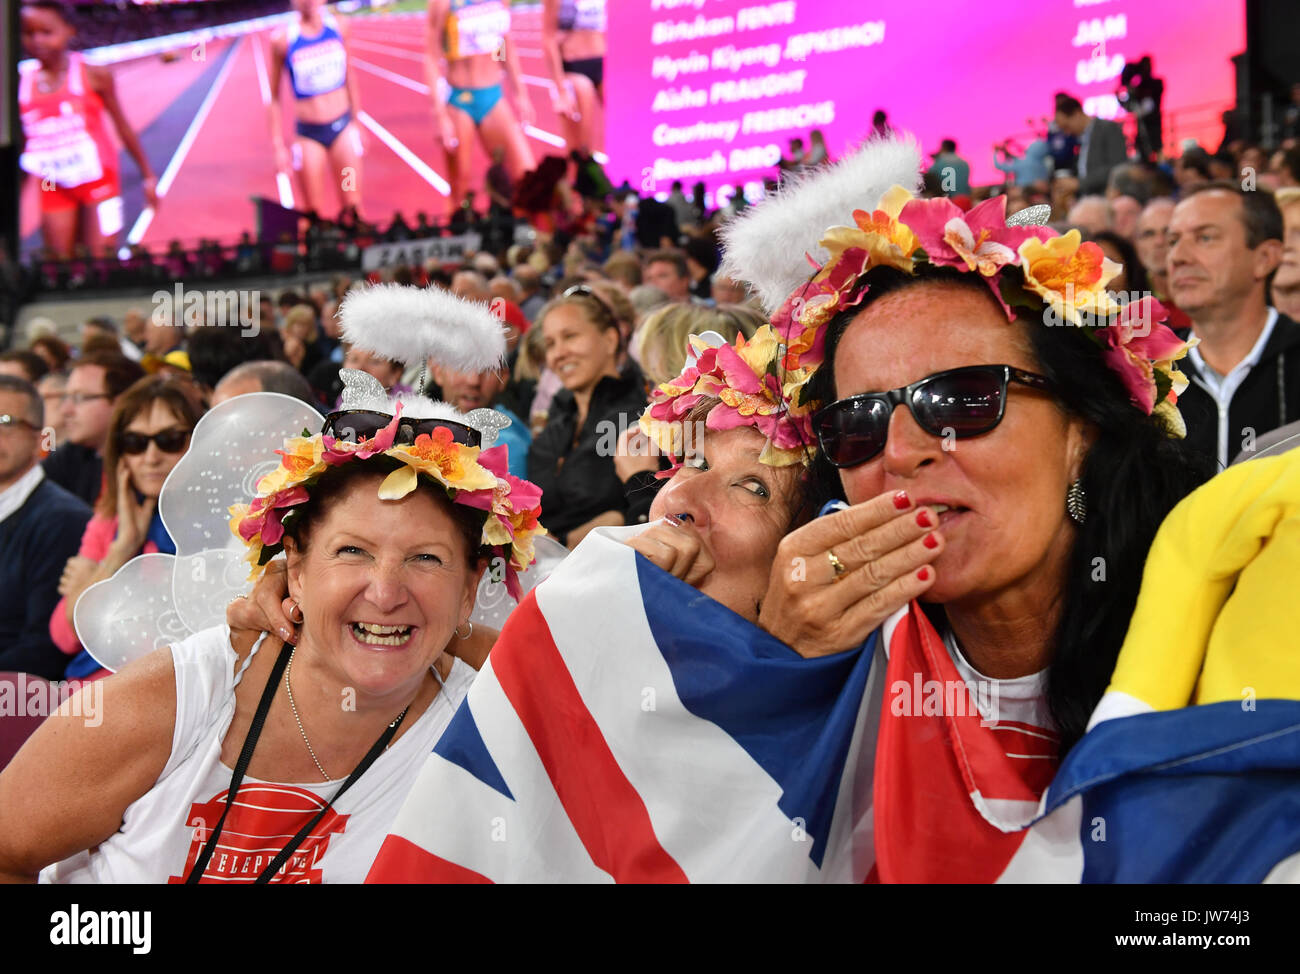 Leichtathletik: IAAF Weltmeisterschaft am 11.08.2017 im Olympiastadion a Londra (Großbritannien). Kostümierte Zuschaurinnen lachen auf der Tribüne. Foto: Bernd Thissen/dpa Foto Stock